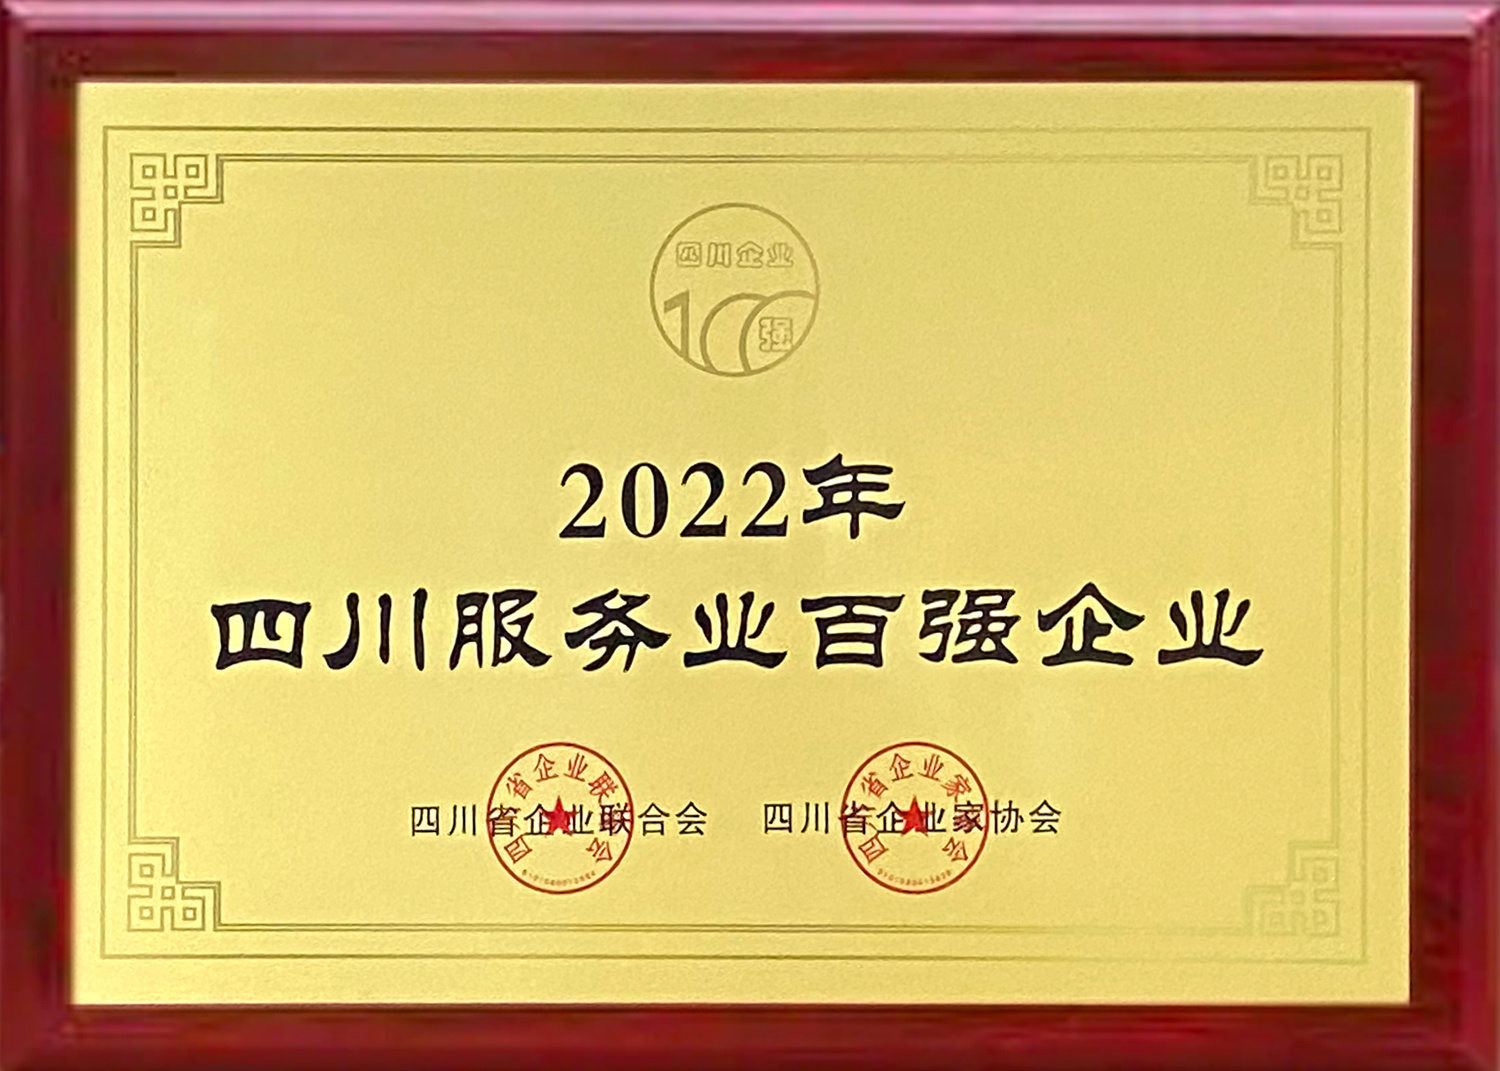 2022年12月 3245澳门新莆京获评——“2022四川服务业企业100强”